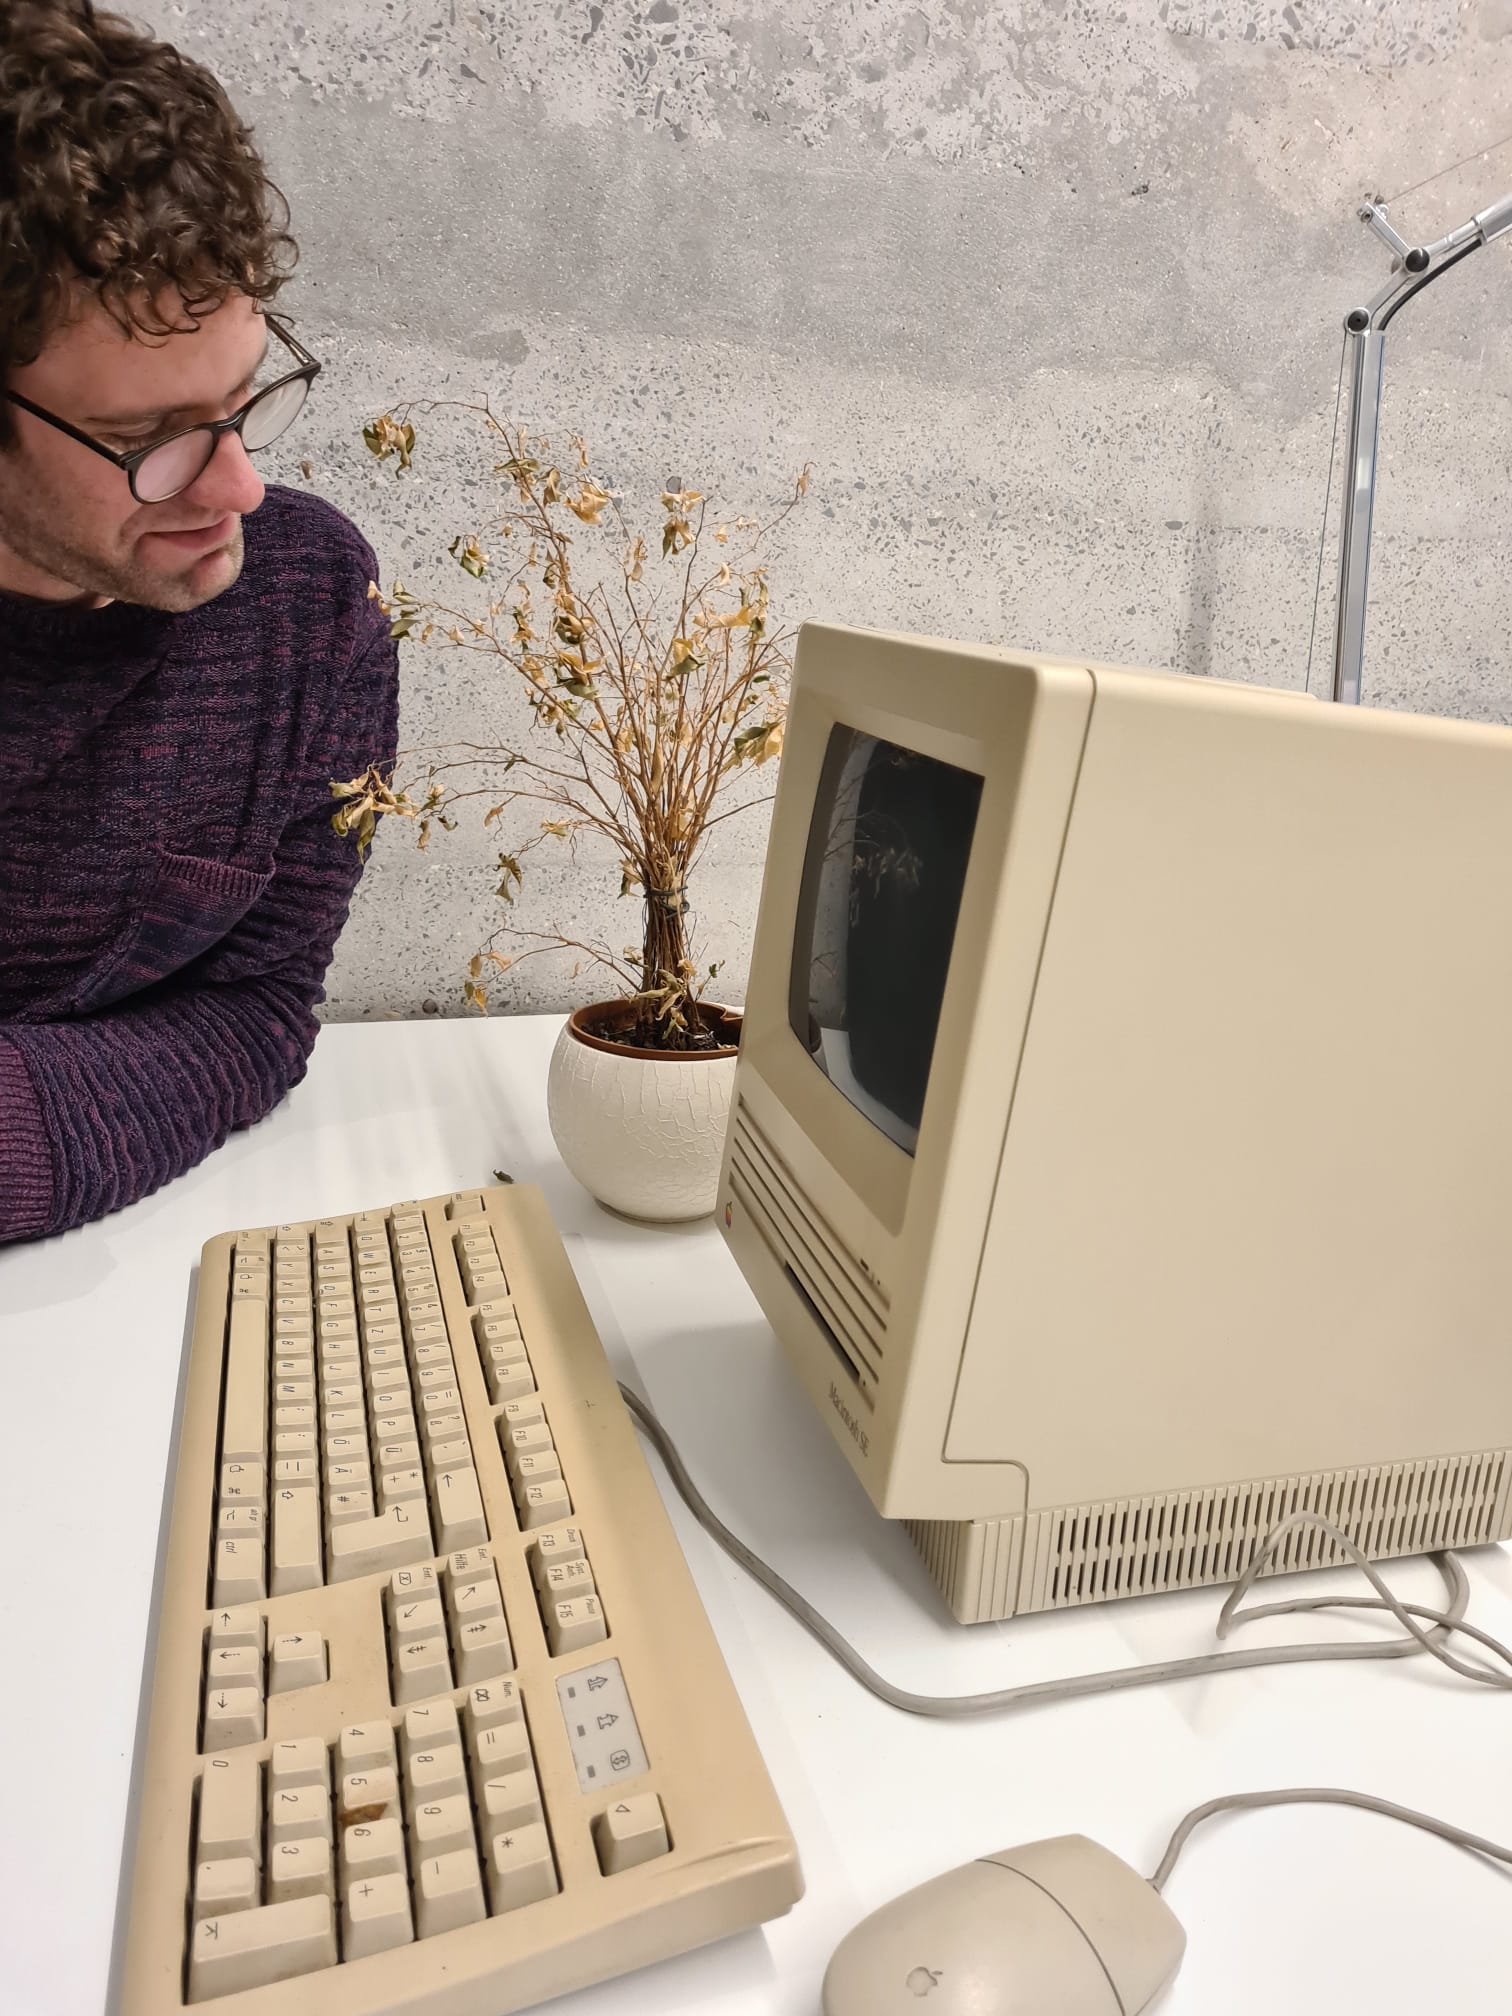 Bastian am alten Apple Rechner mit verwelkter Blume